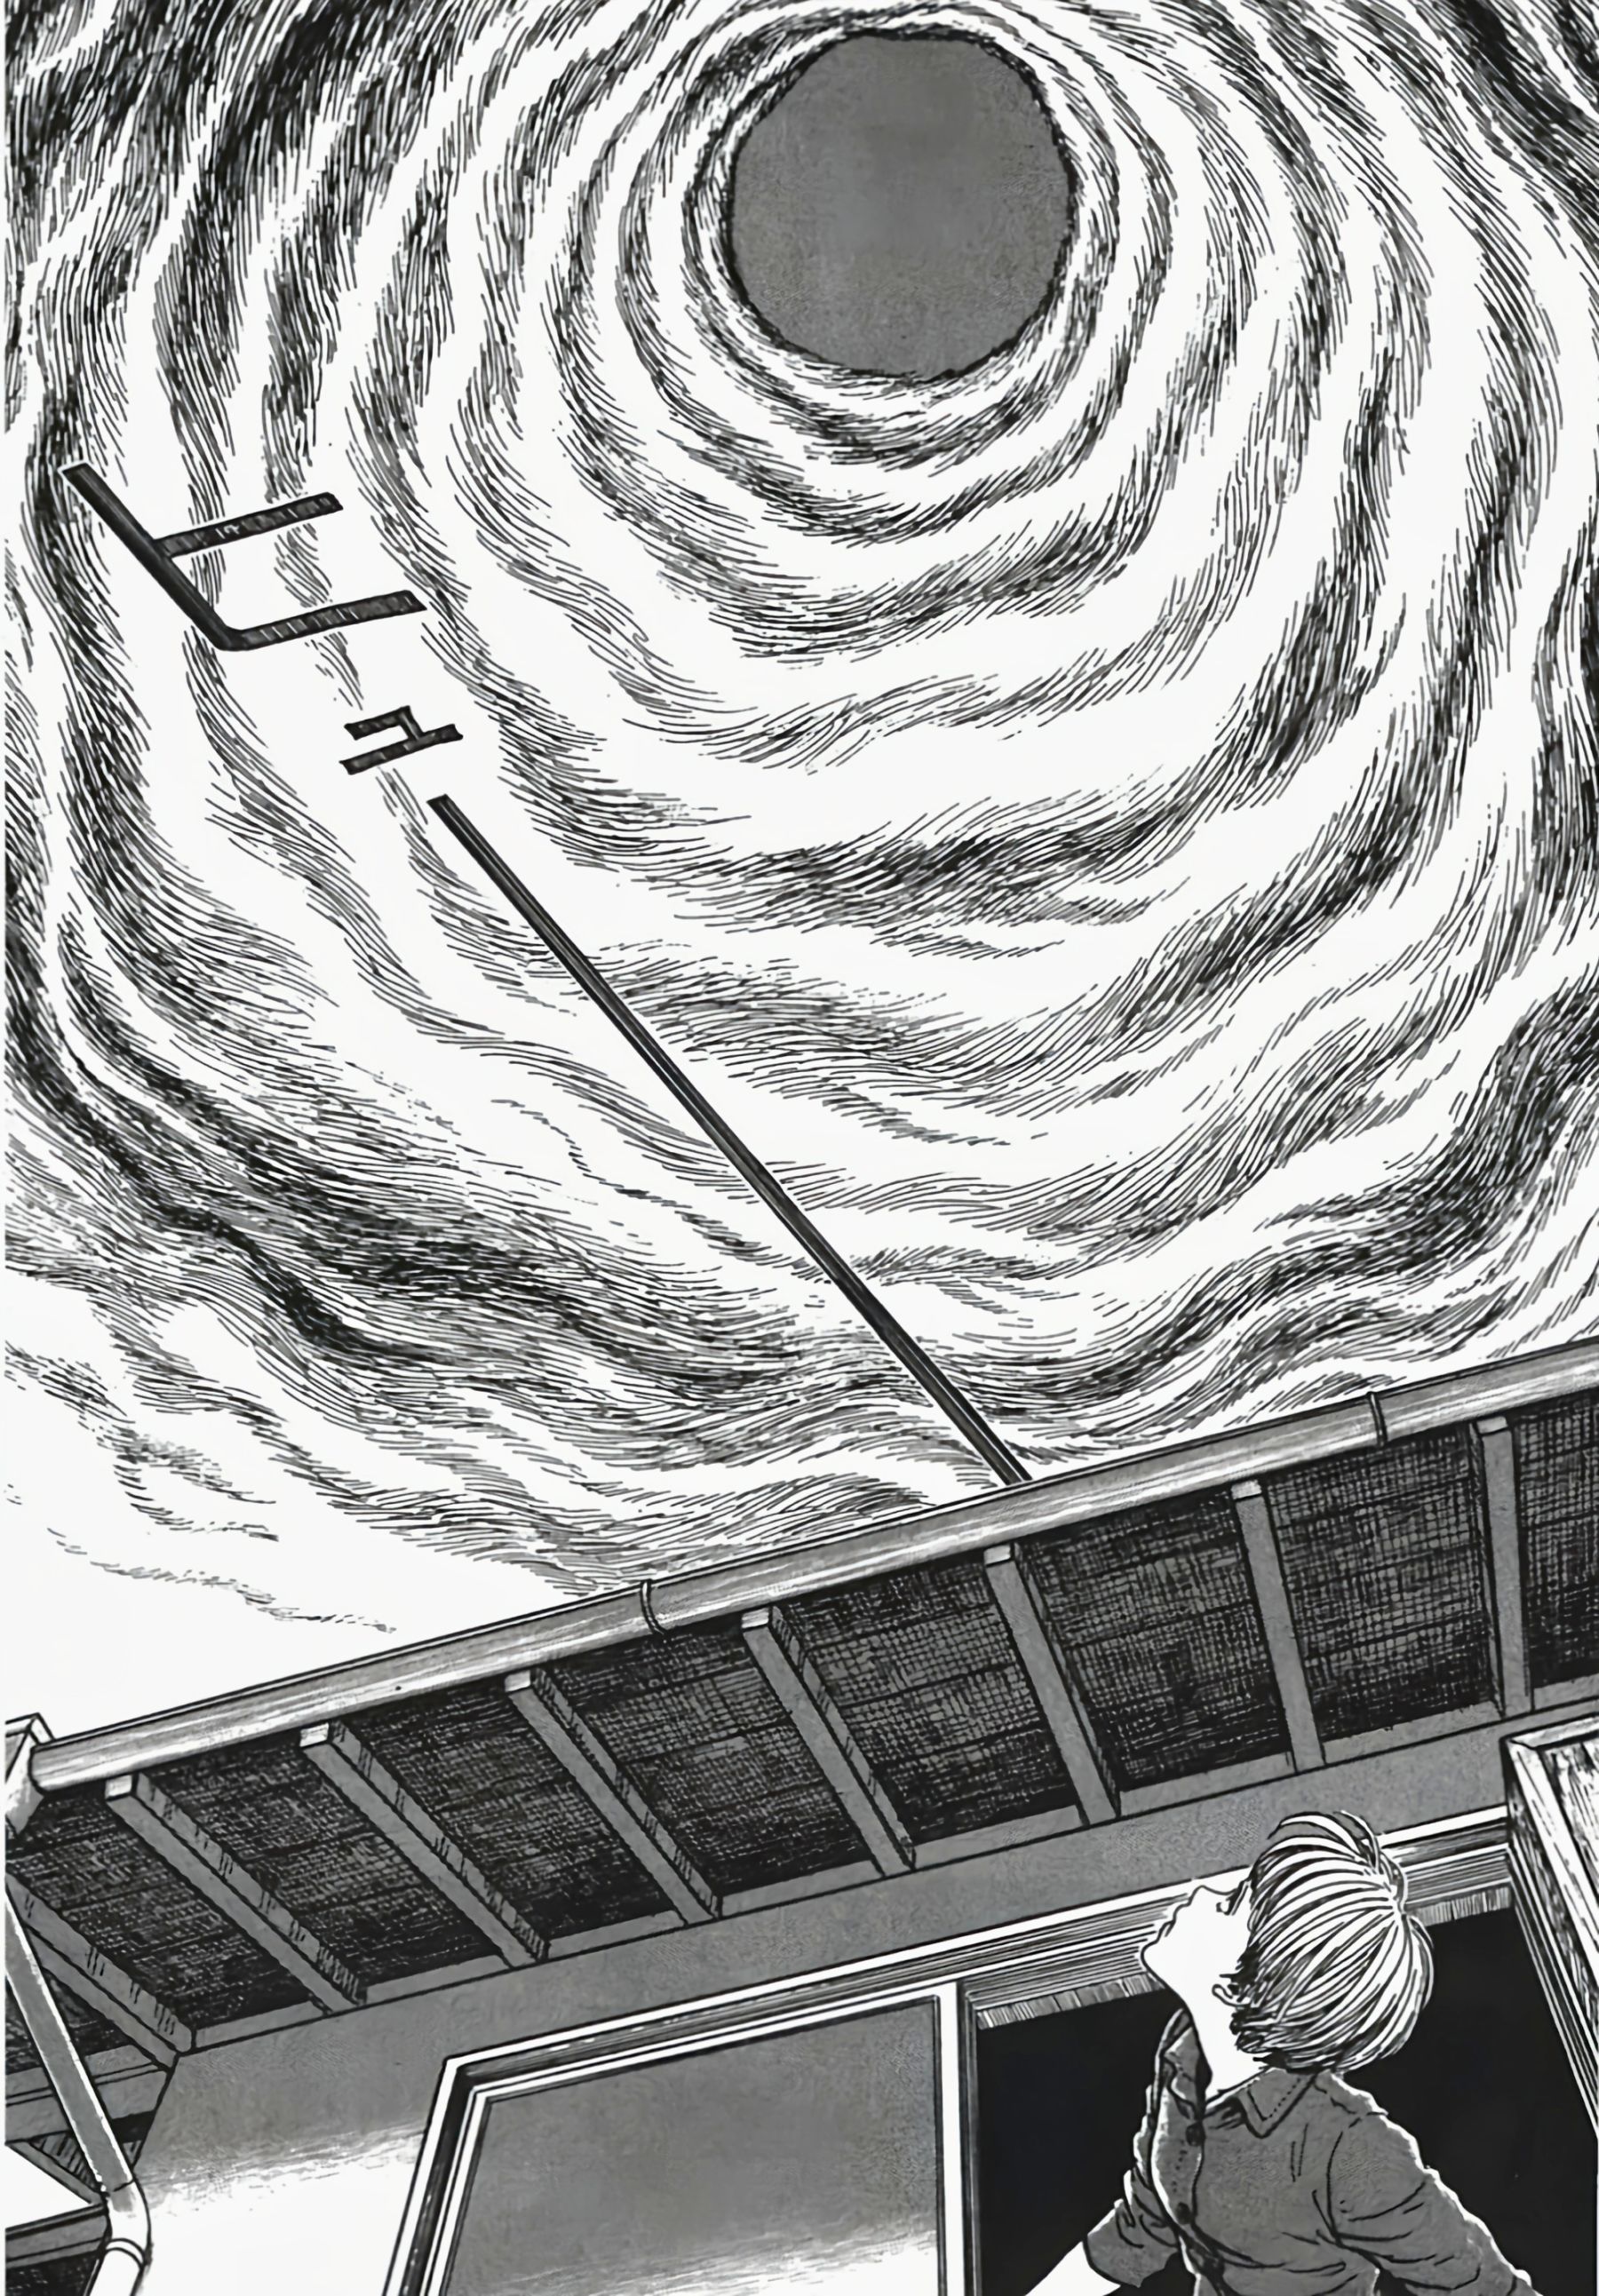 【影視動漫】伊藤潤二的頂級恐怖漫畫《漩渦》-第15張